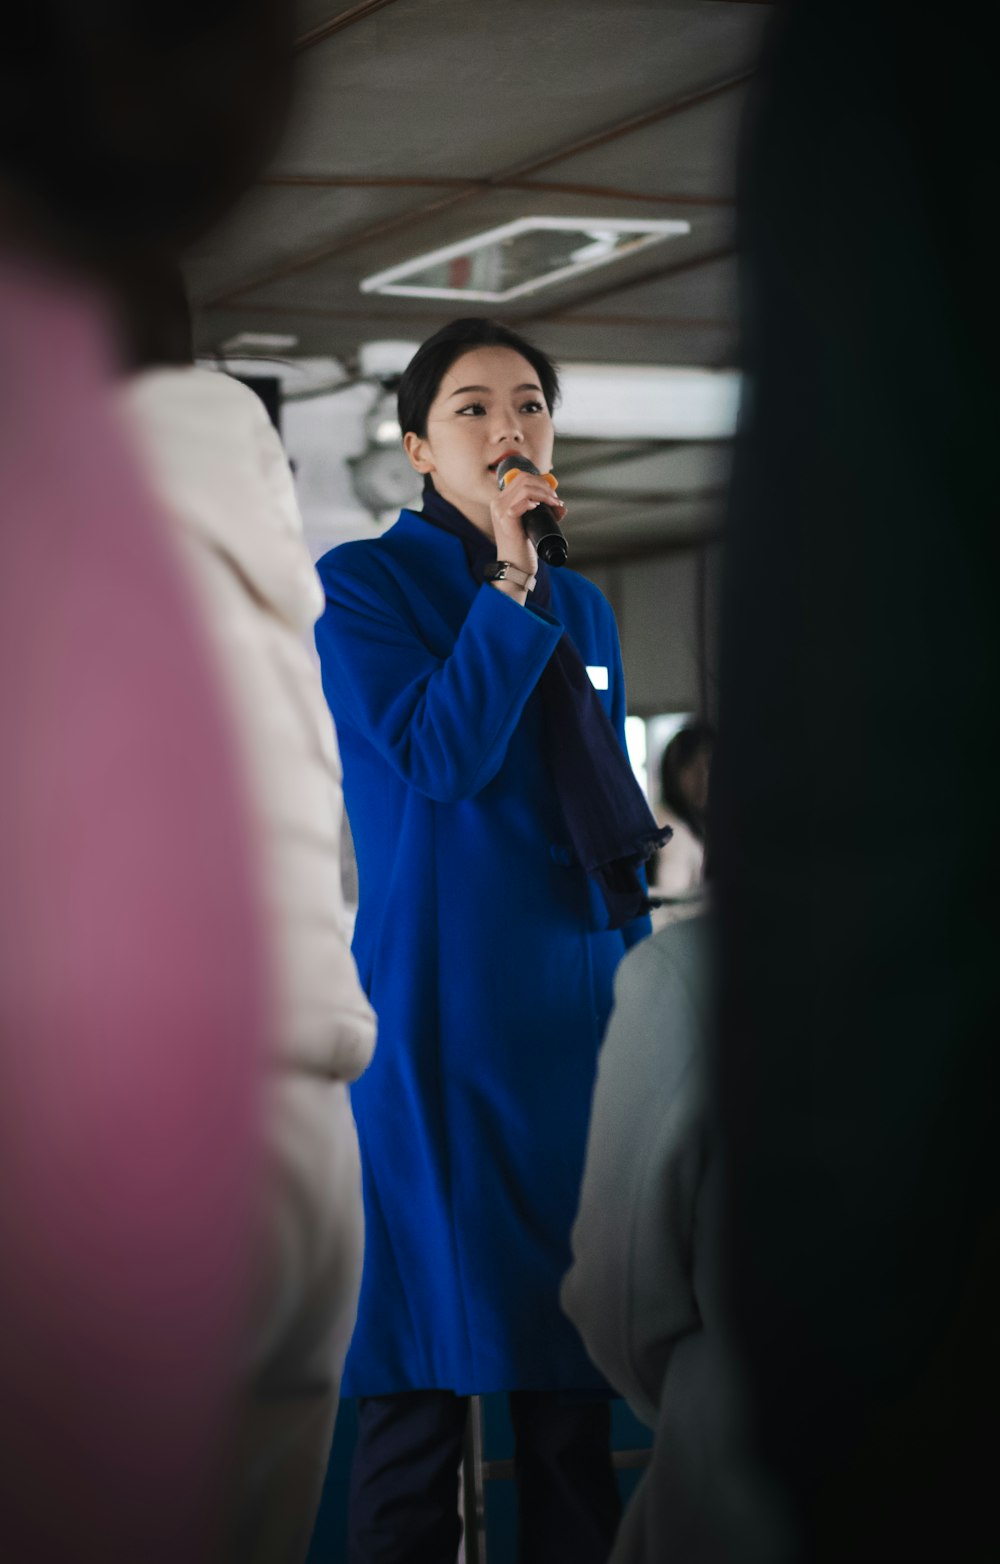 eine Frau im blauen Mantel steht vor einem Spiegel